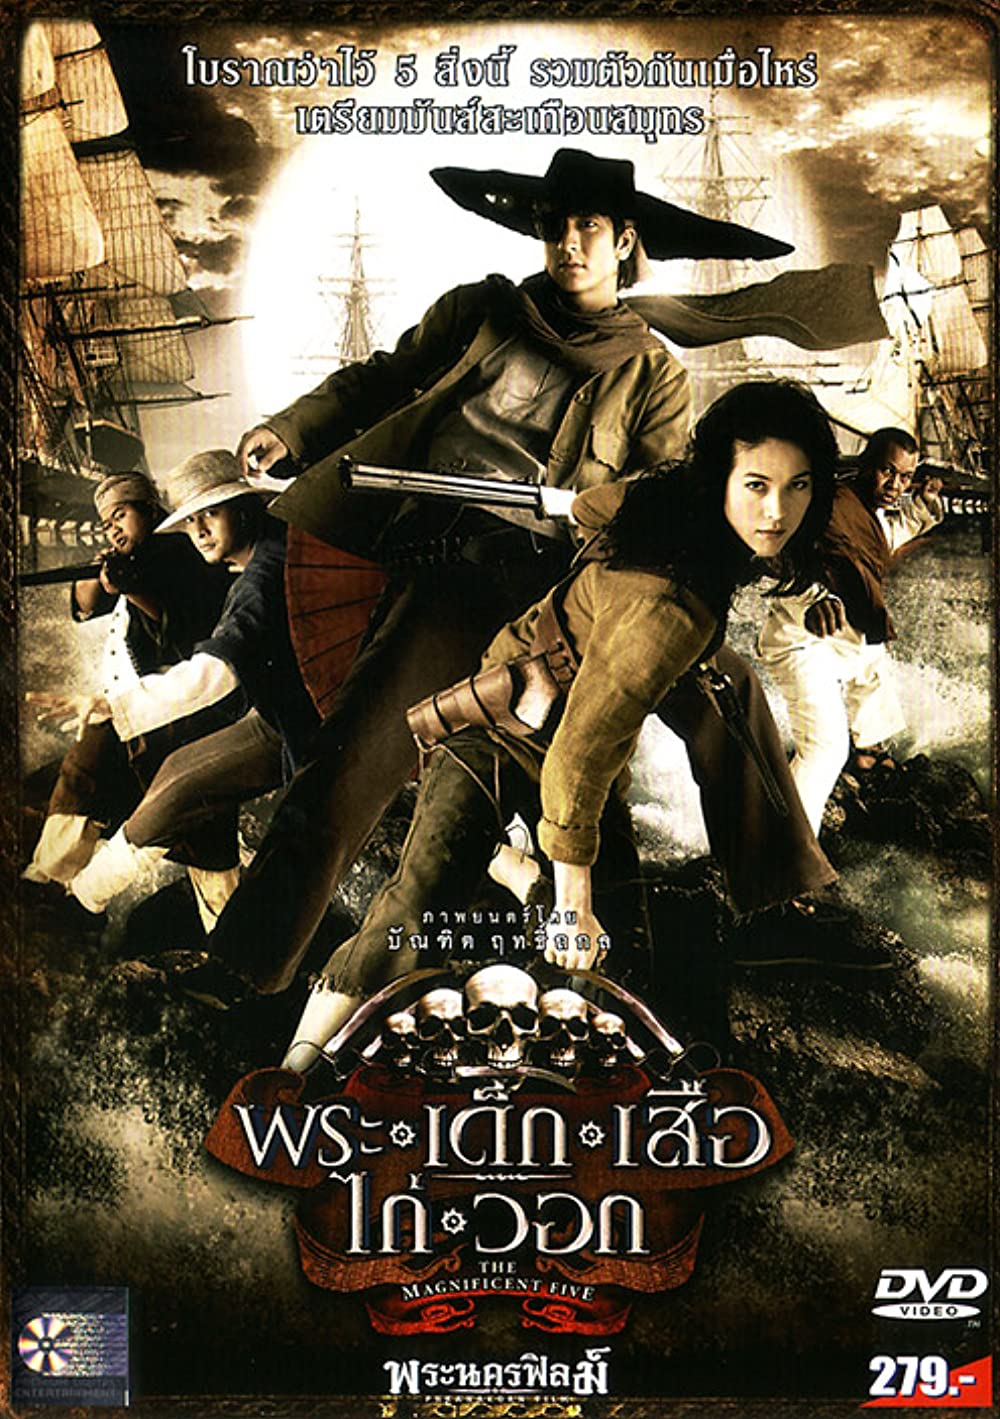 ดูหนังออนไลน์ฟรี Phra-dek-seua-kai-wawk (2006) พระ เด็ก เสือ ไก่ วอก หนังมาสเตอร์ หนังเต็มเรื่อง ดูหนังฟรีออนไลน์ ดูหนังออนไลน์ หนังออนไลน์ ดูหนังใหม่ หนังพากย์ไทย หนังซับไทย ดูฟรีHD